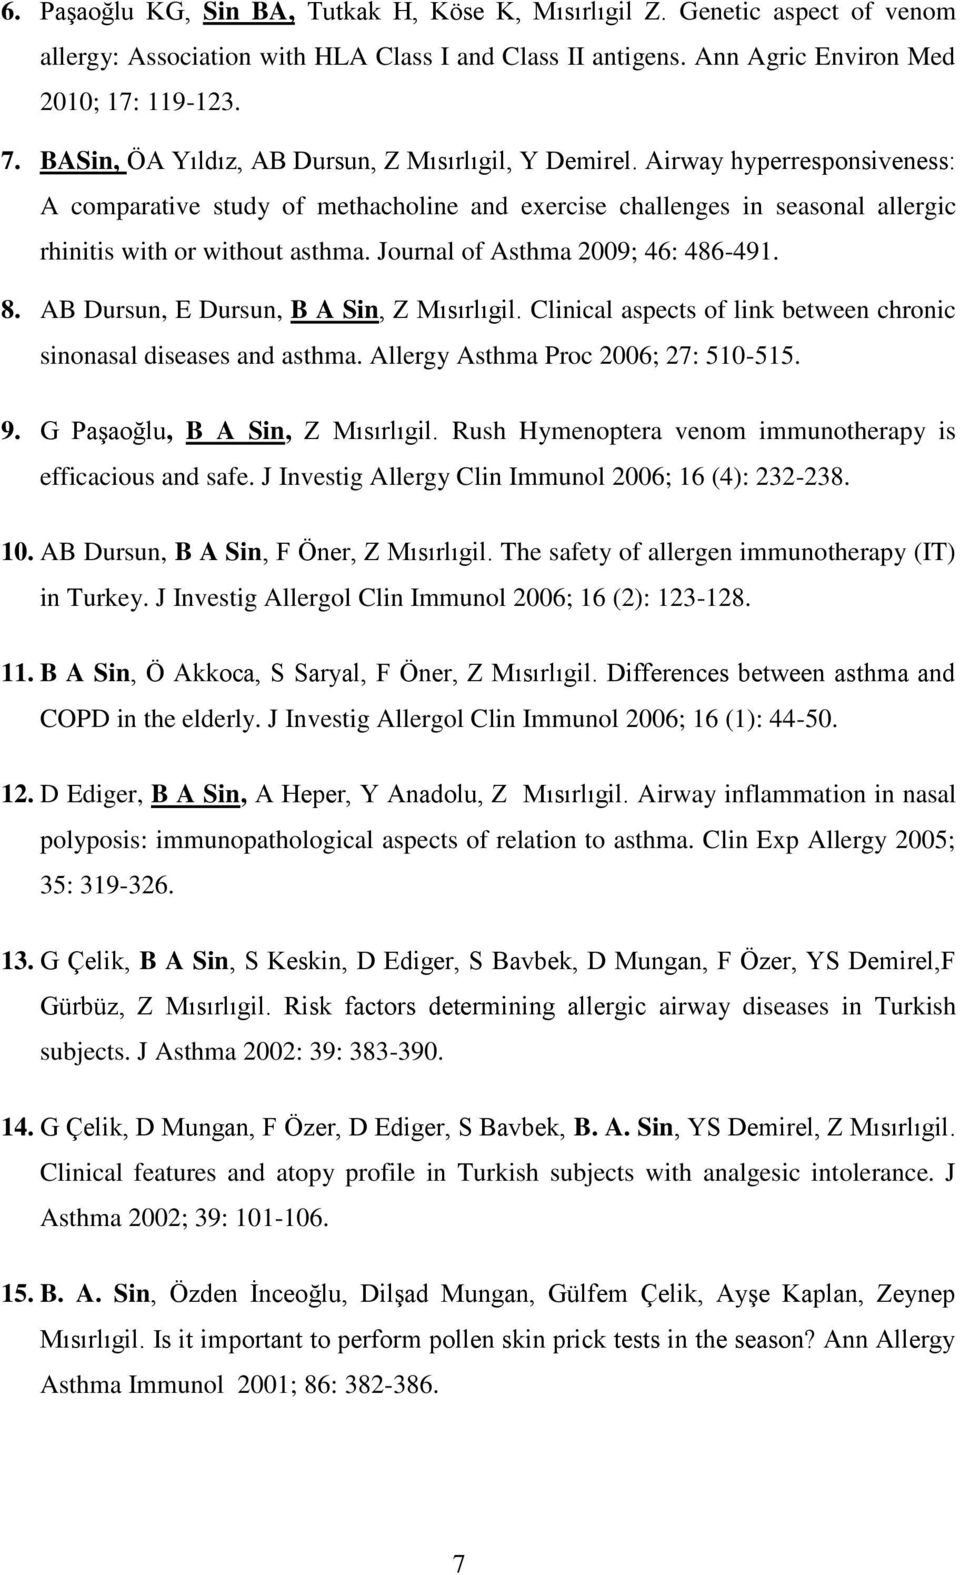 Journal of Asthma 2009; 46: 486-491. 8. AB Dursun, E Dursun, B A Sin, Z Mısırlıgil. Clinical aspects of link between chronic sinonasal diseases and asthma. Allergy Asthma Proc 2006; 27: 510-515. 9.